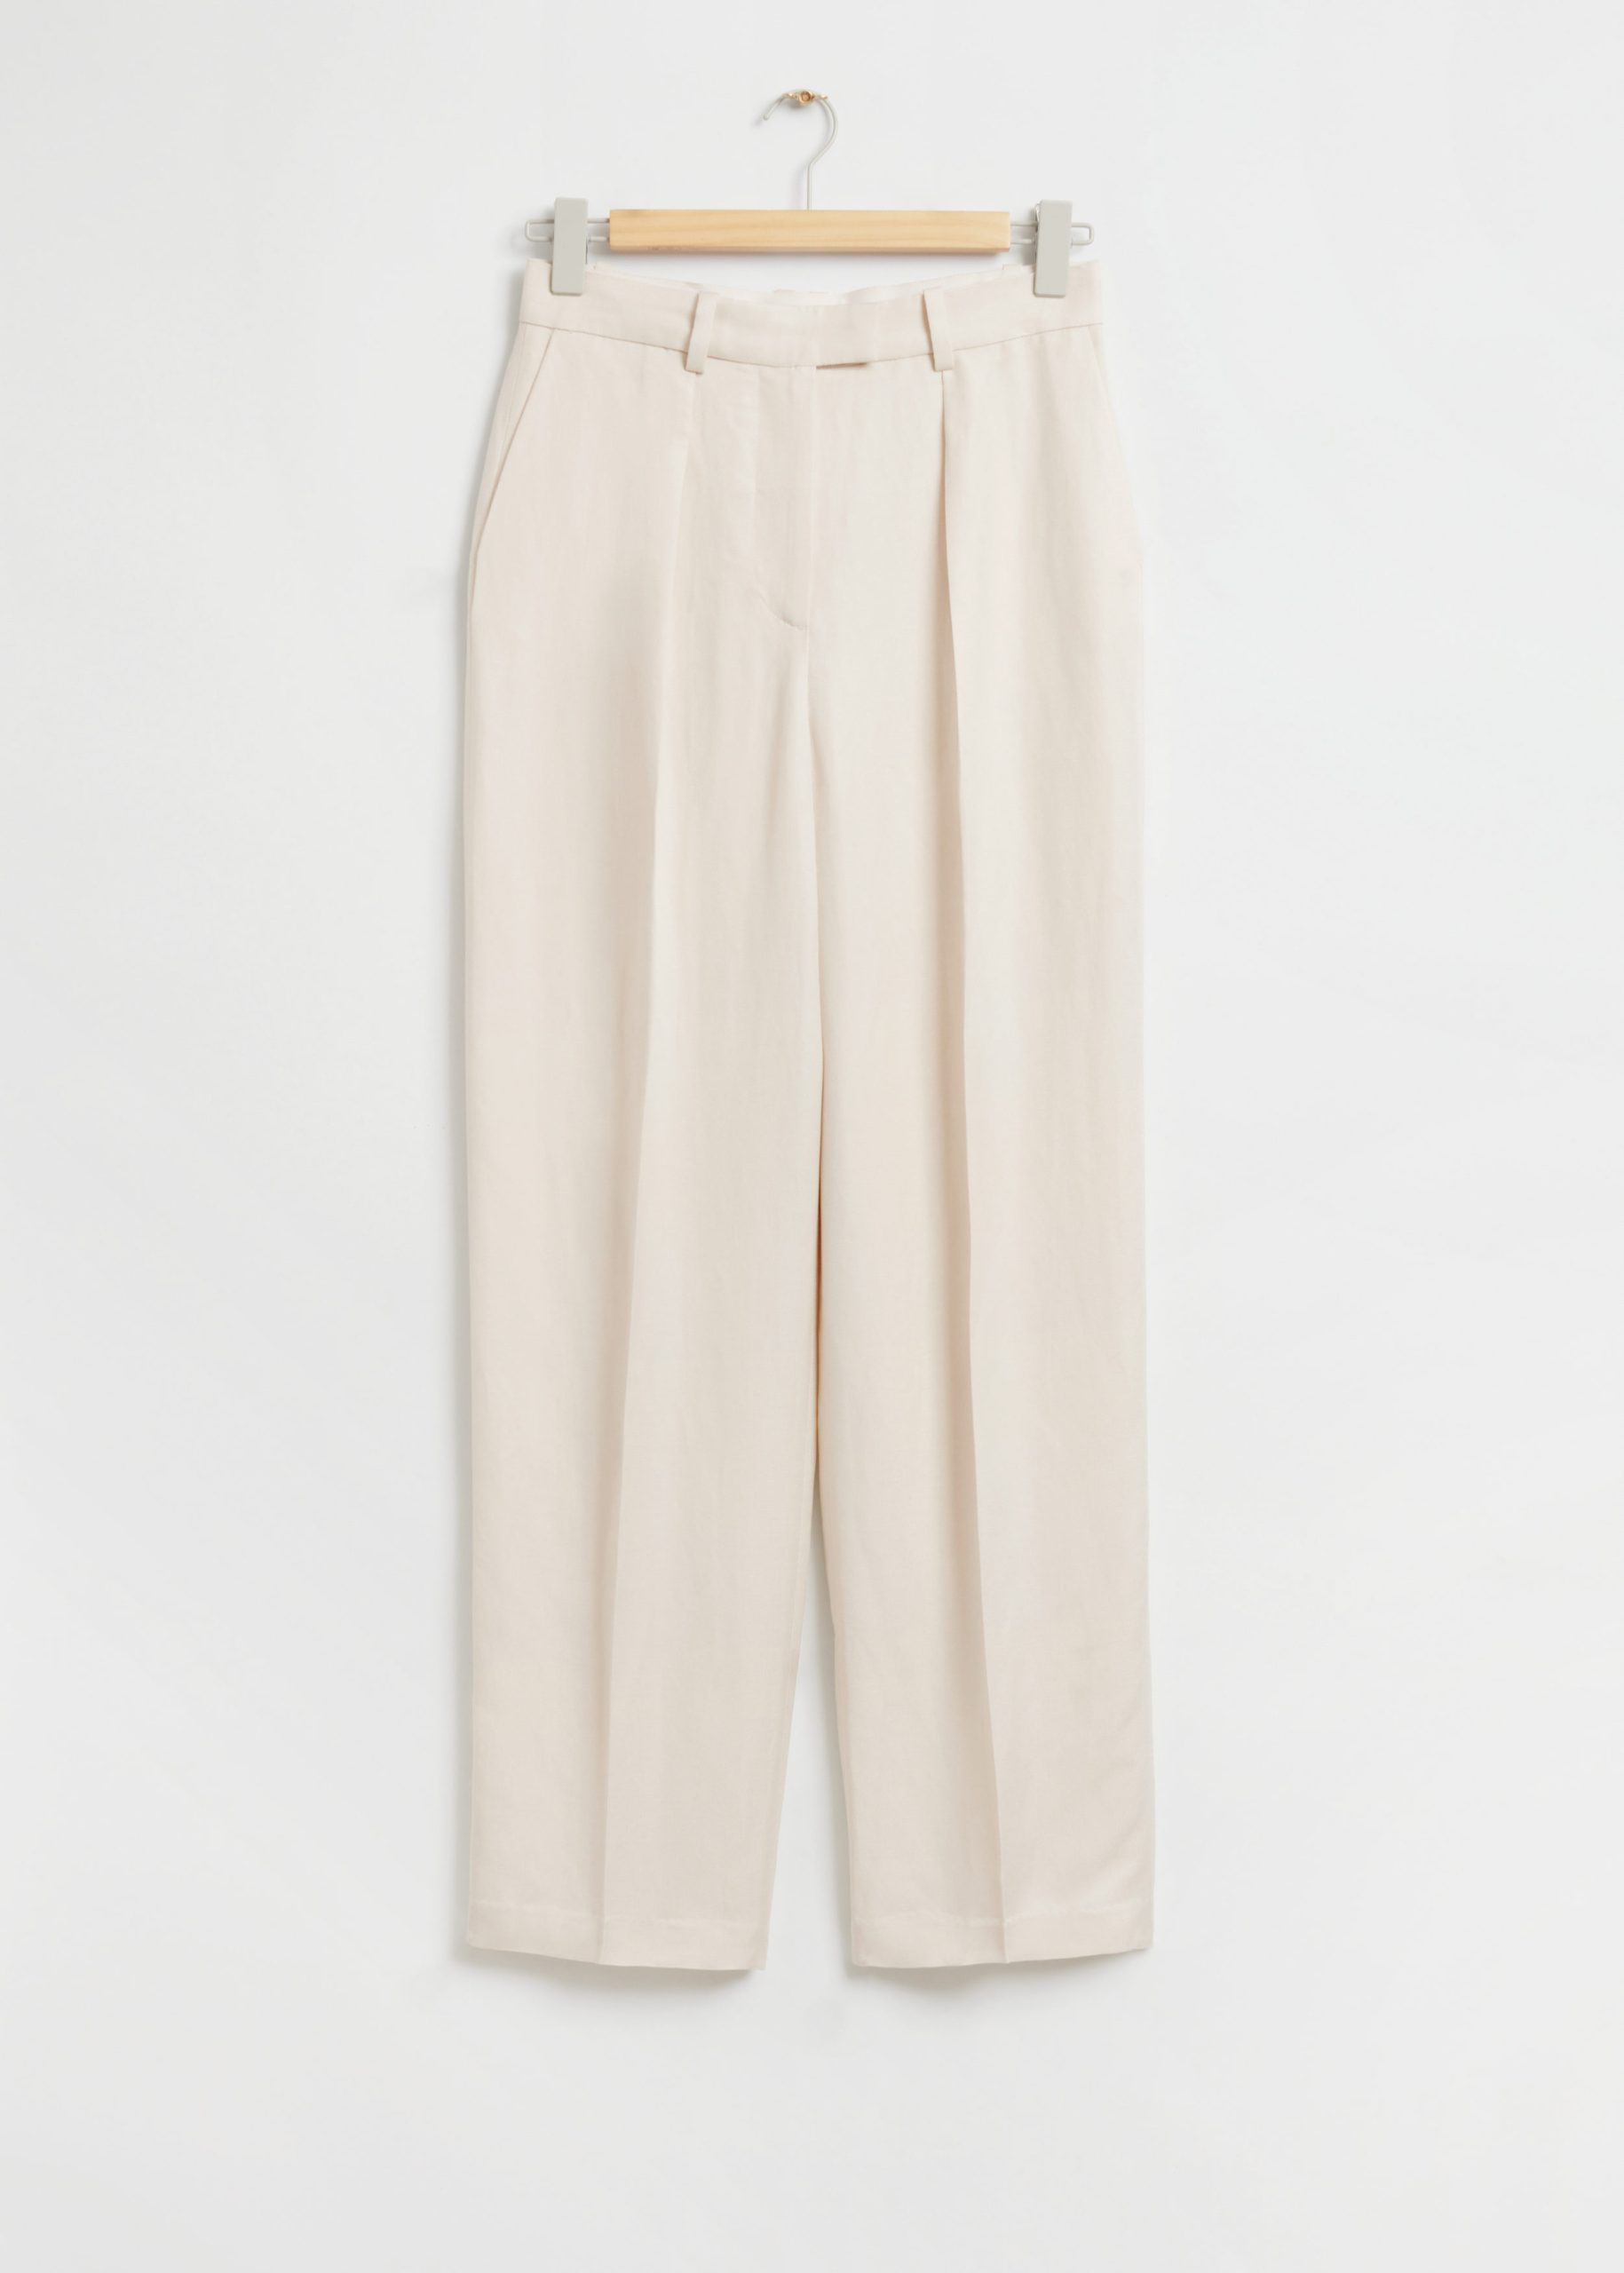 & Other Stories Lockere, elegante Hose mit Bügelfalten Cremefarben, Anzughosen in Größe 38. Farbe: Cream